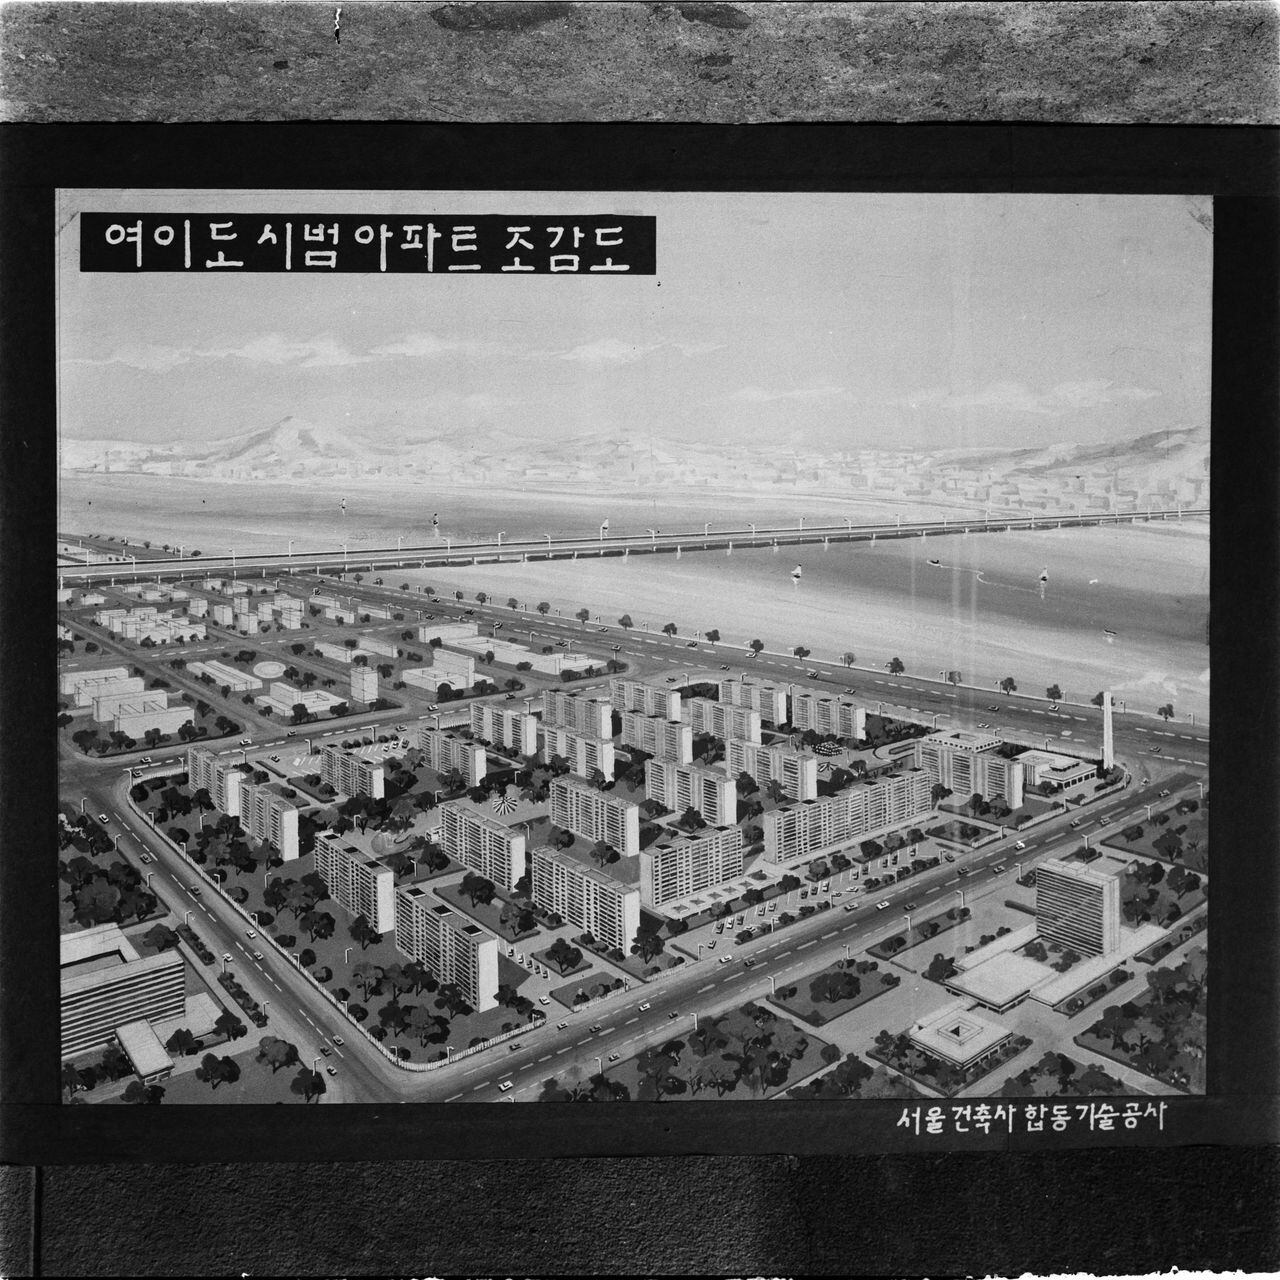 1970년 9월 25일 촬영된 여의도 시범아파트 조감도. /서울역사아카이브 <전체화면 버튼을 클릭하면 좀 더 생생하게 볼 수 있습니다.>